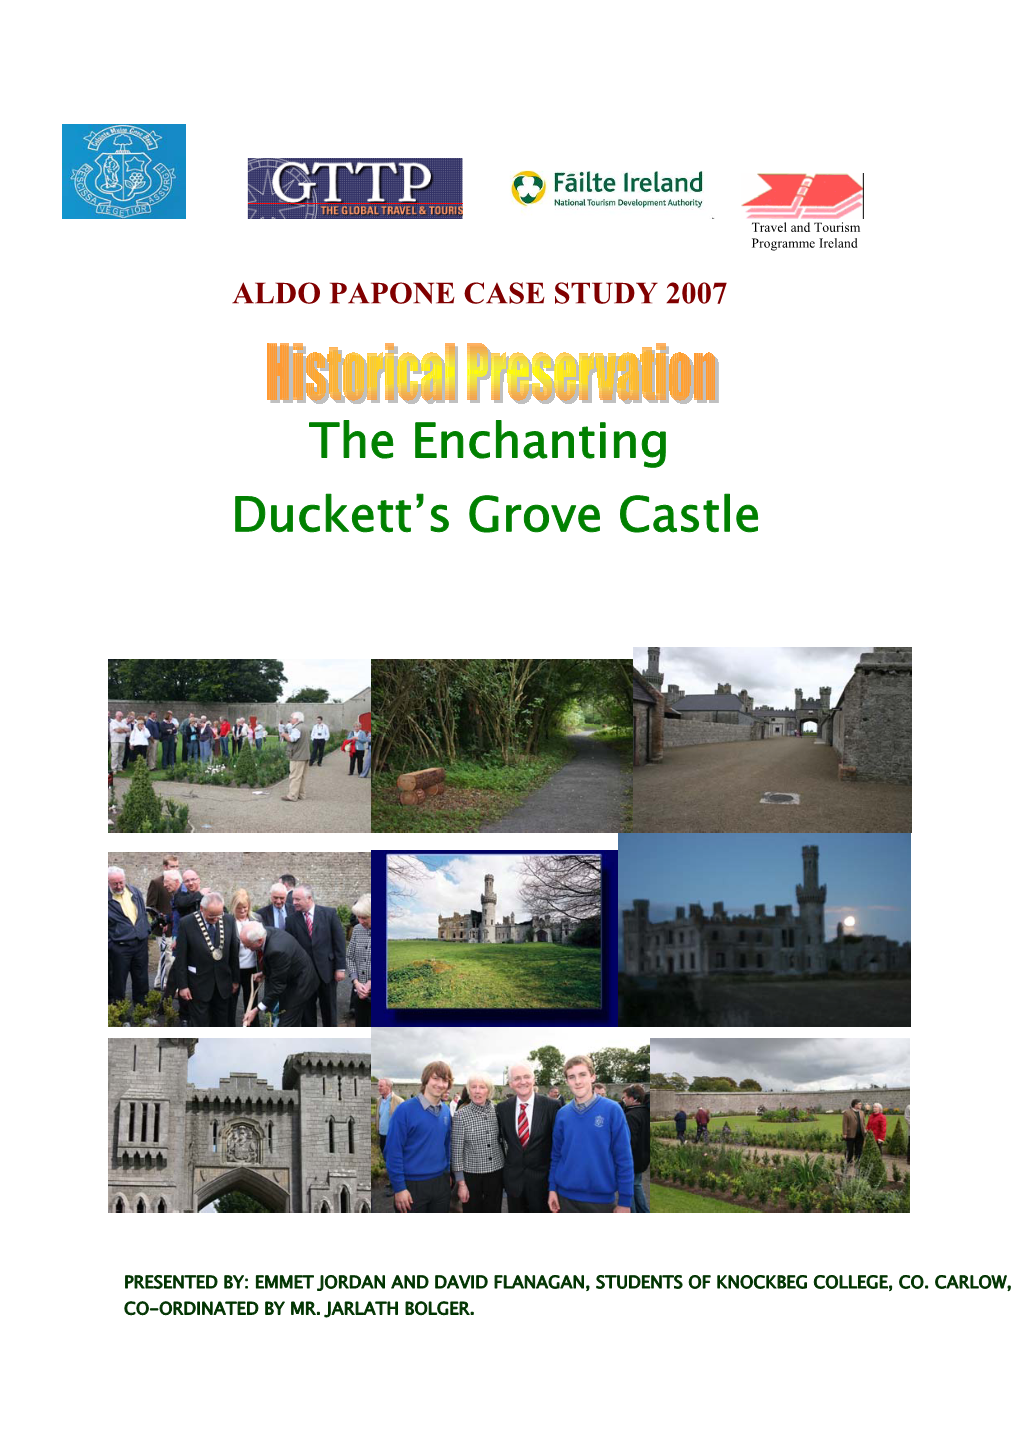 The Enchanting Duckett's Grove Castle